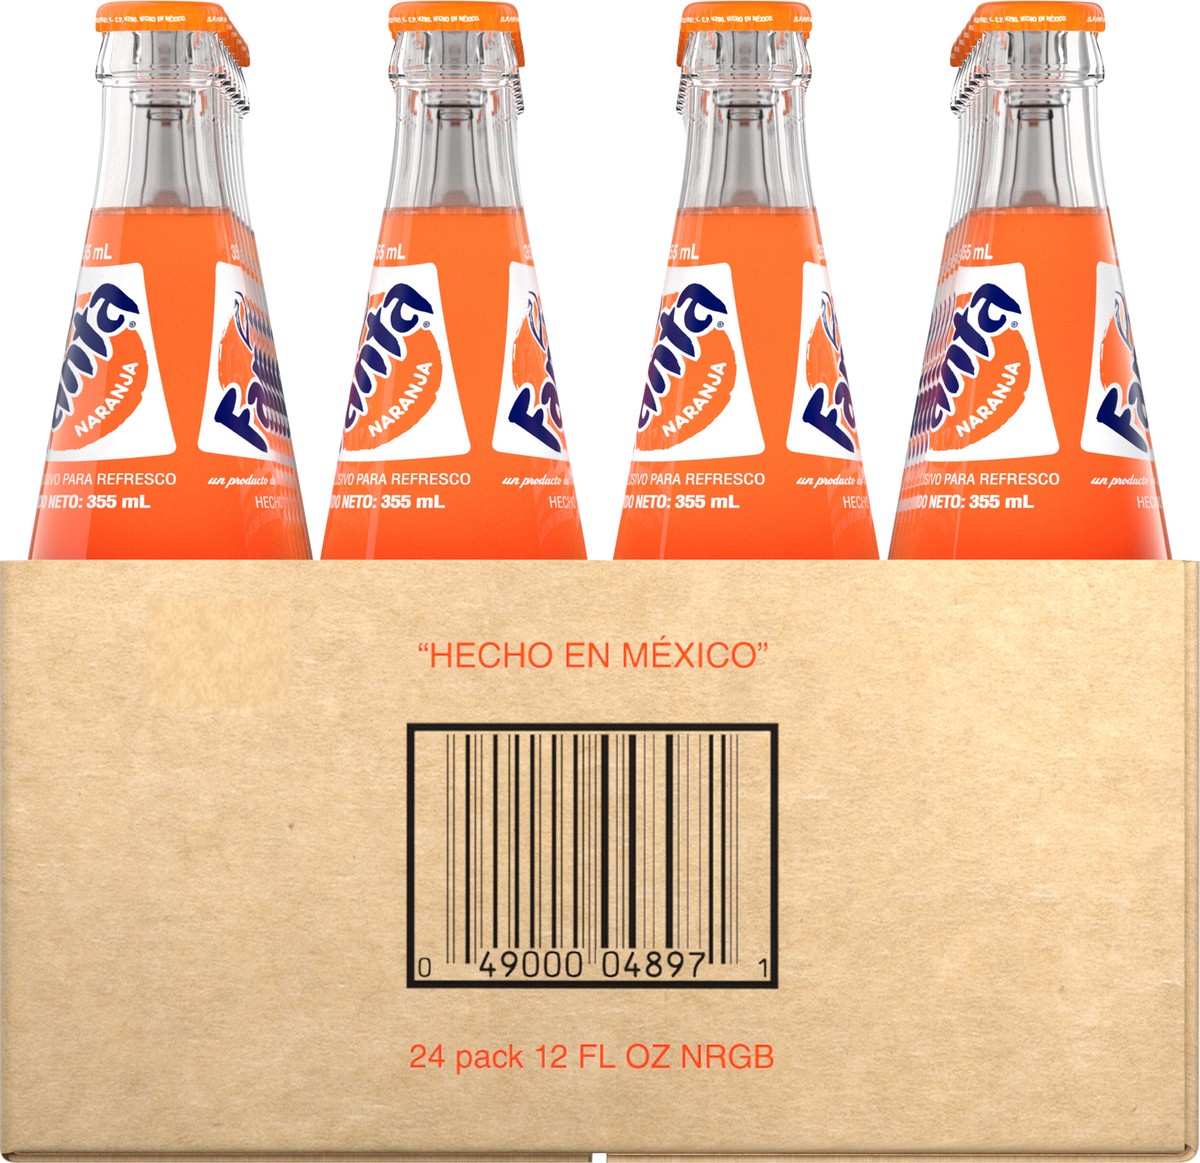 slide 8 of 9, Fanta Orange Mexico Soda Fruit Flavored Soft Drink, 355 mL, 24 Pack, 24 ct